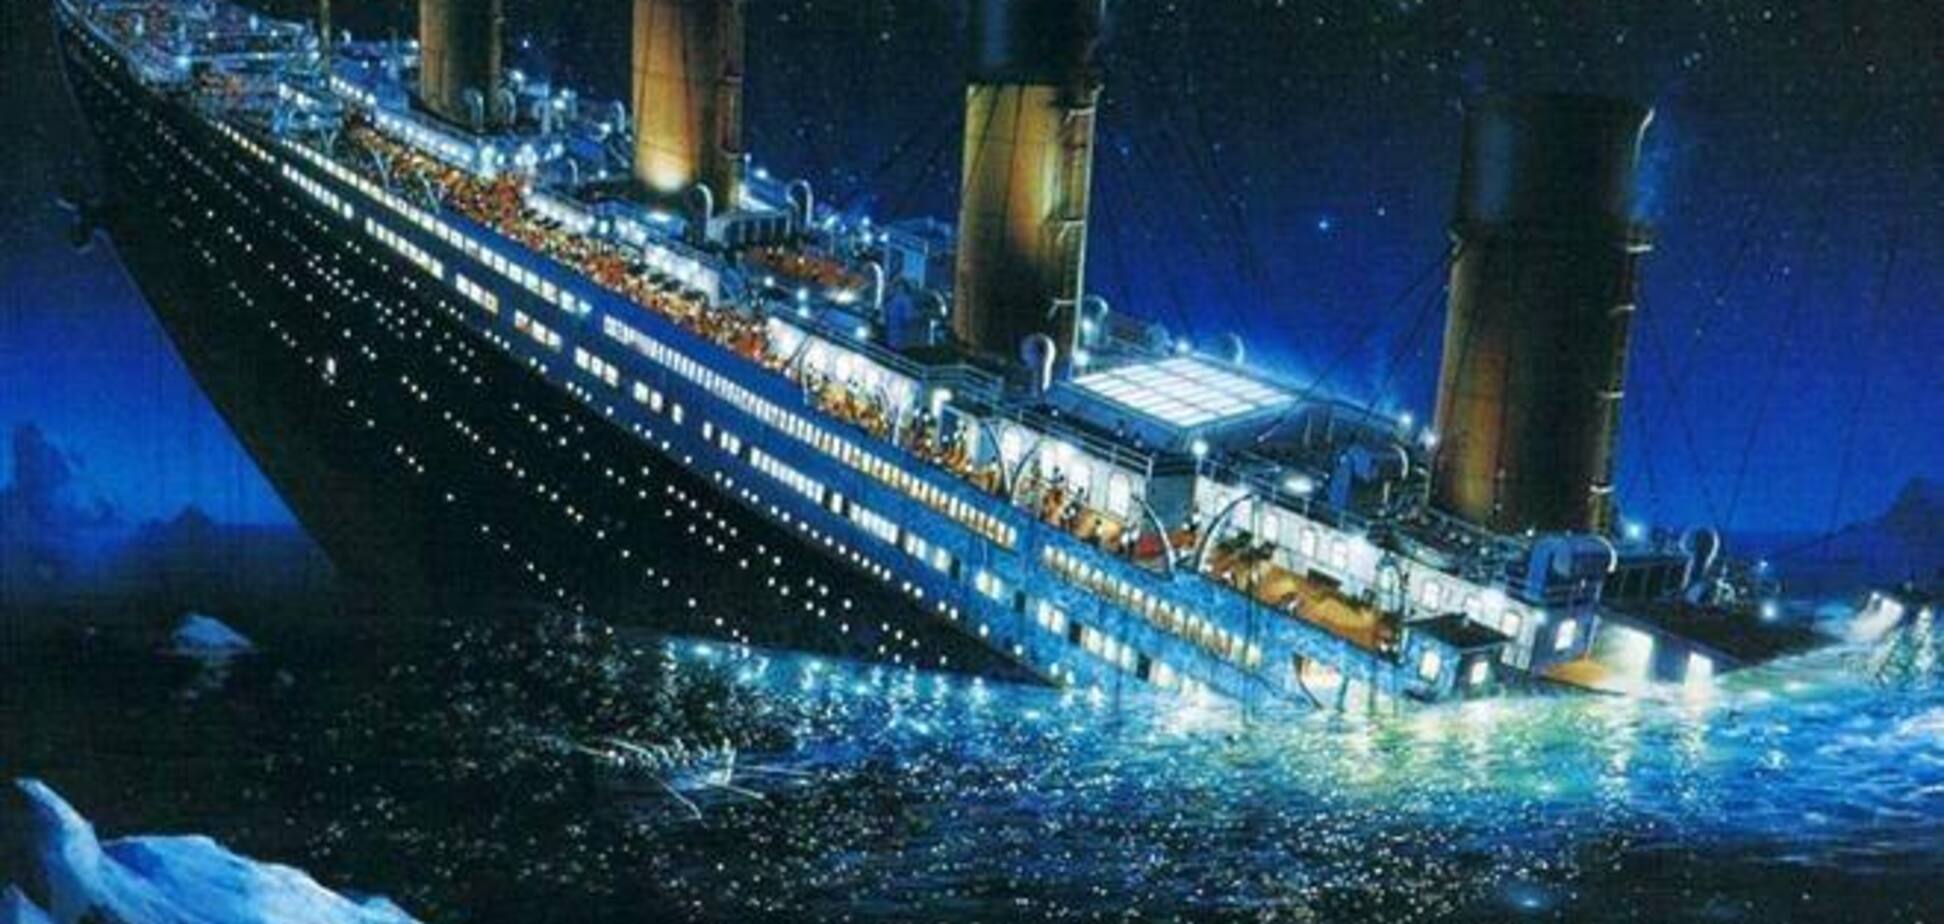 Туристам предложат утонуть на 'Титанике'